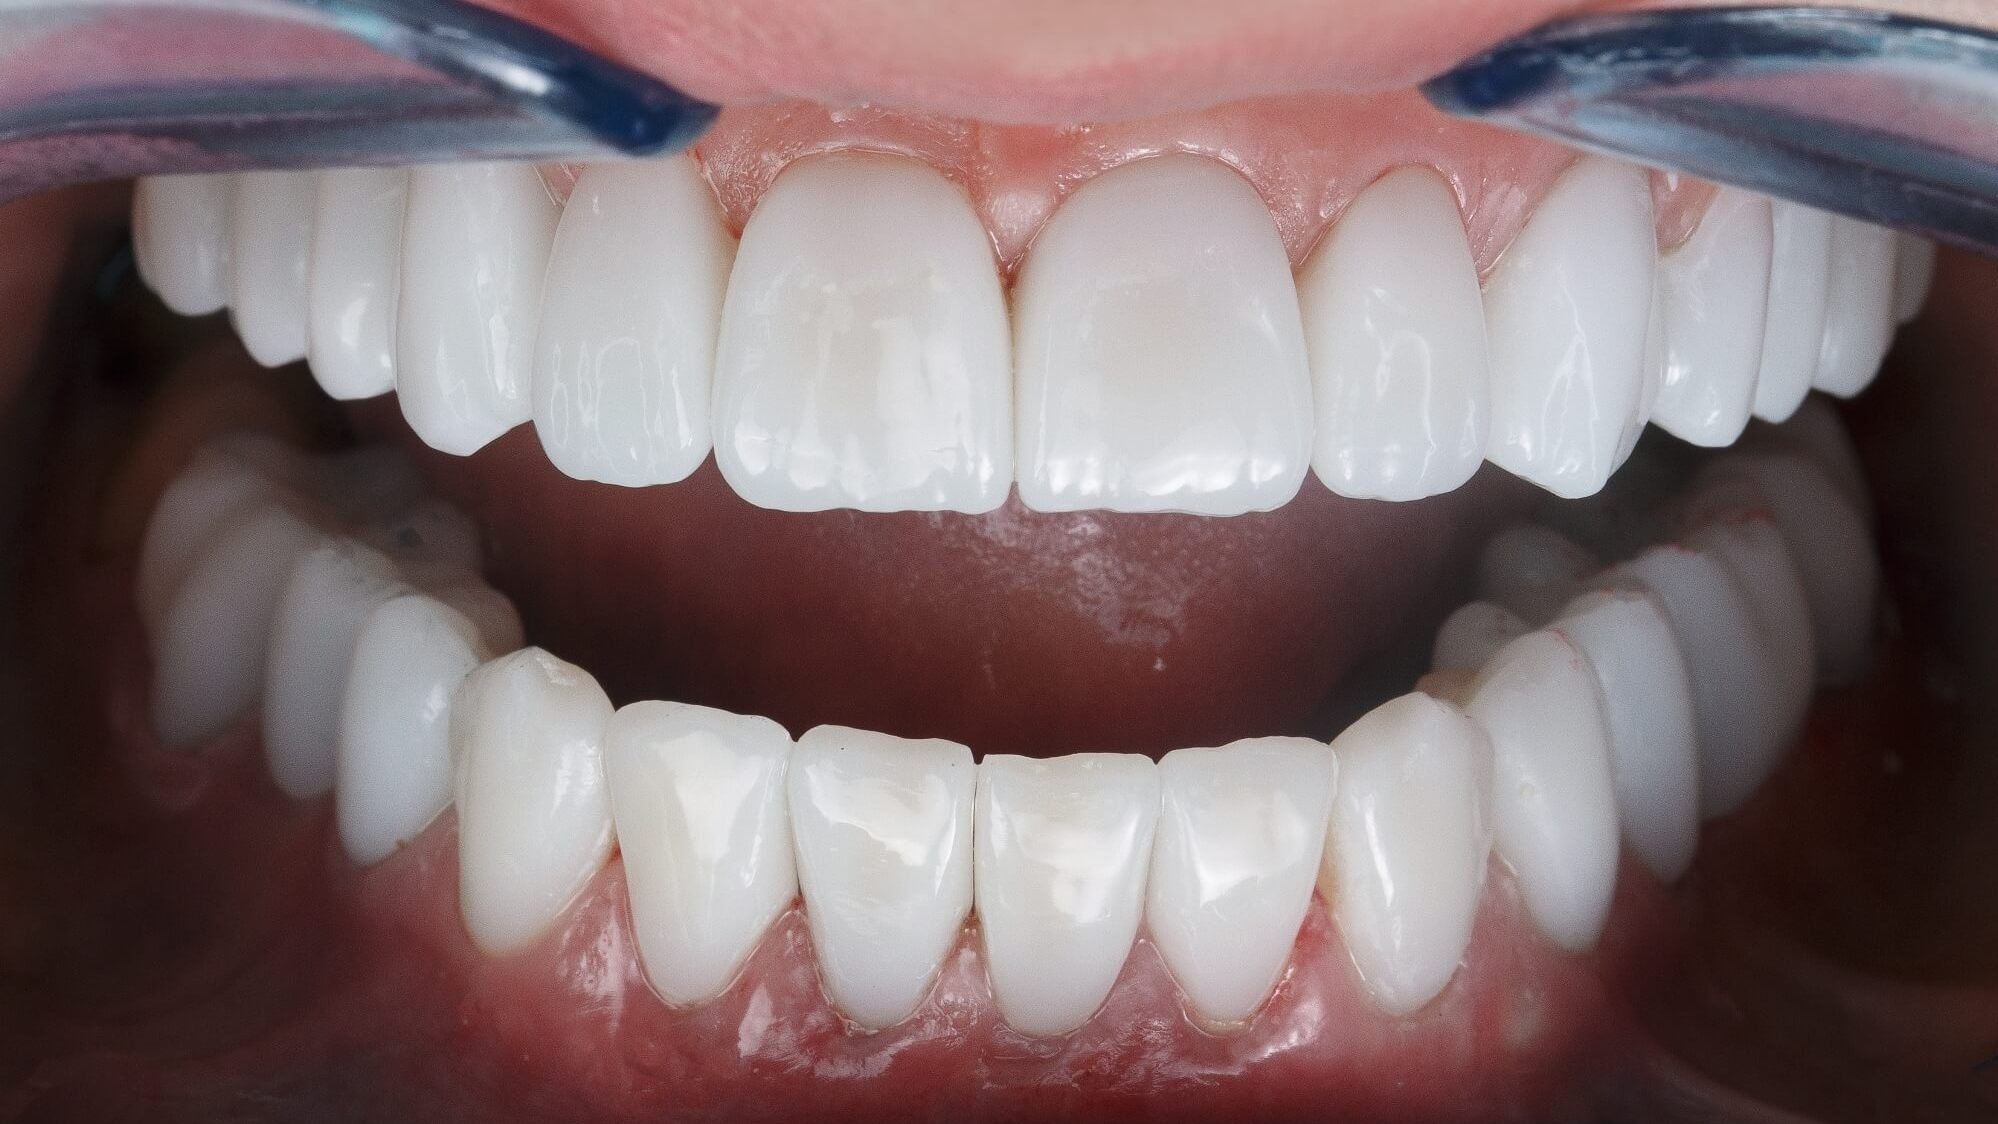 циркониевые коронки зафиксированные на зубах пациента